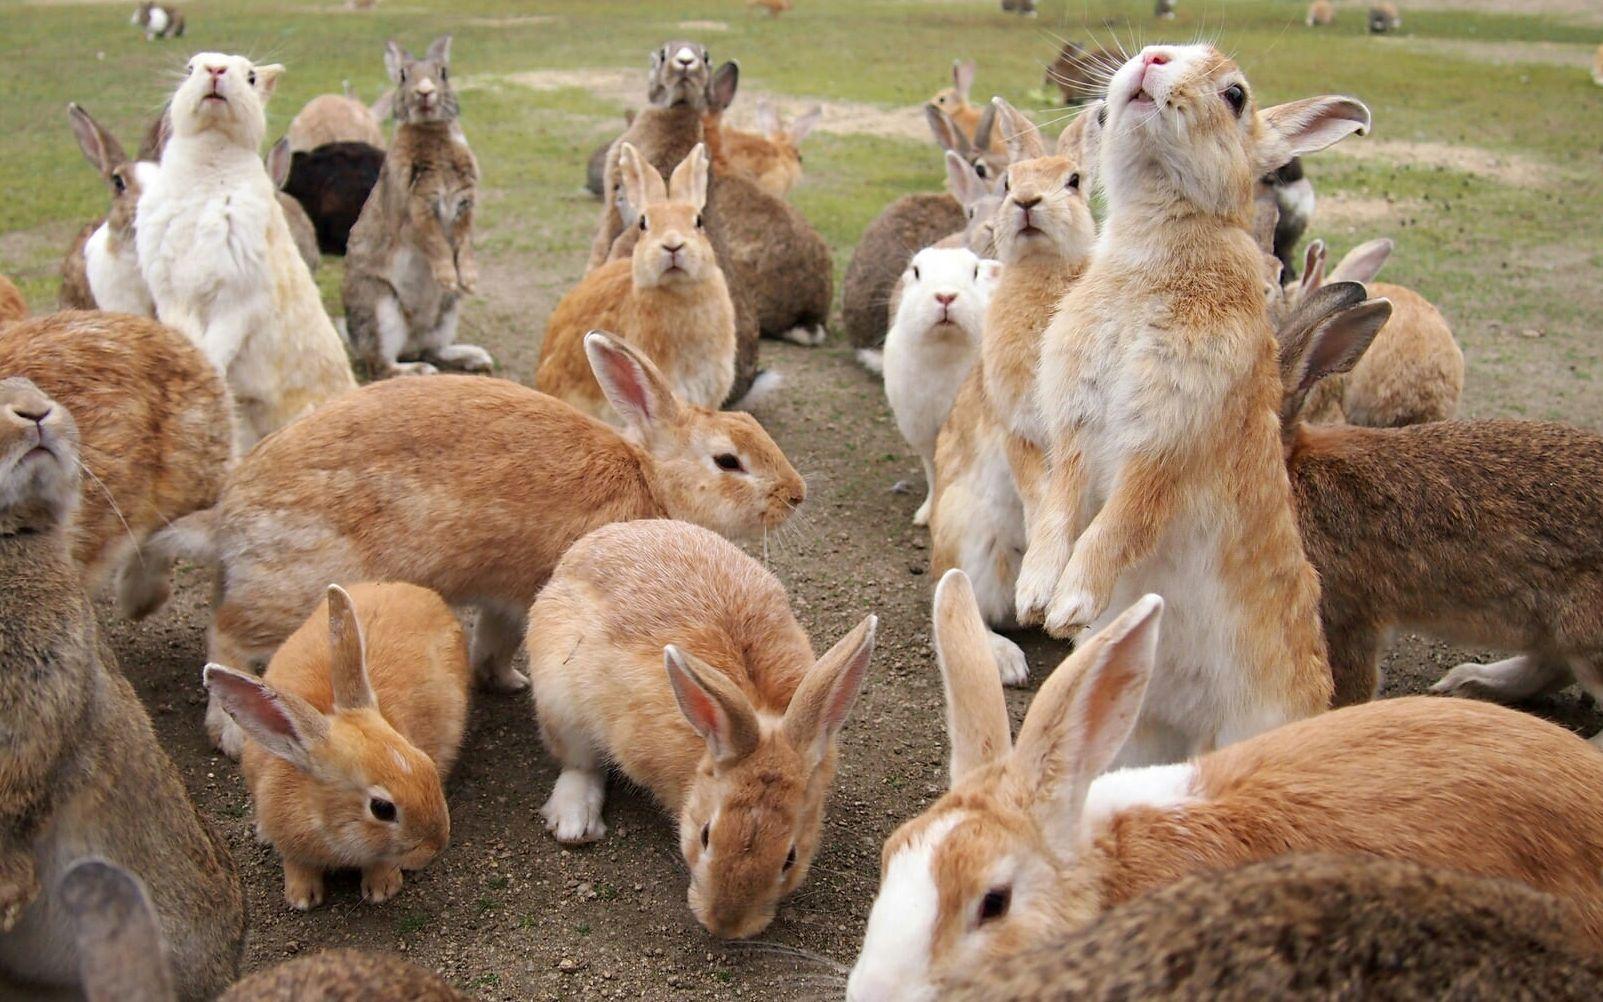 在领域的野兔 库存图片. 图片 包括有 兔子, 宠物, 野兔, 敬慕, 草甸, 通配, 蓬松, 本质, 乐趣 - 30912985